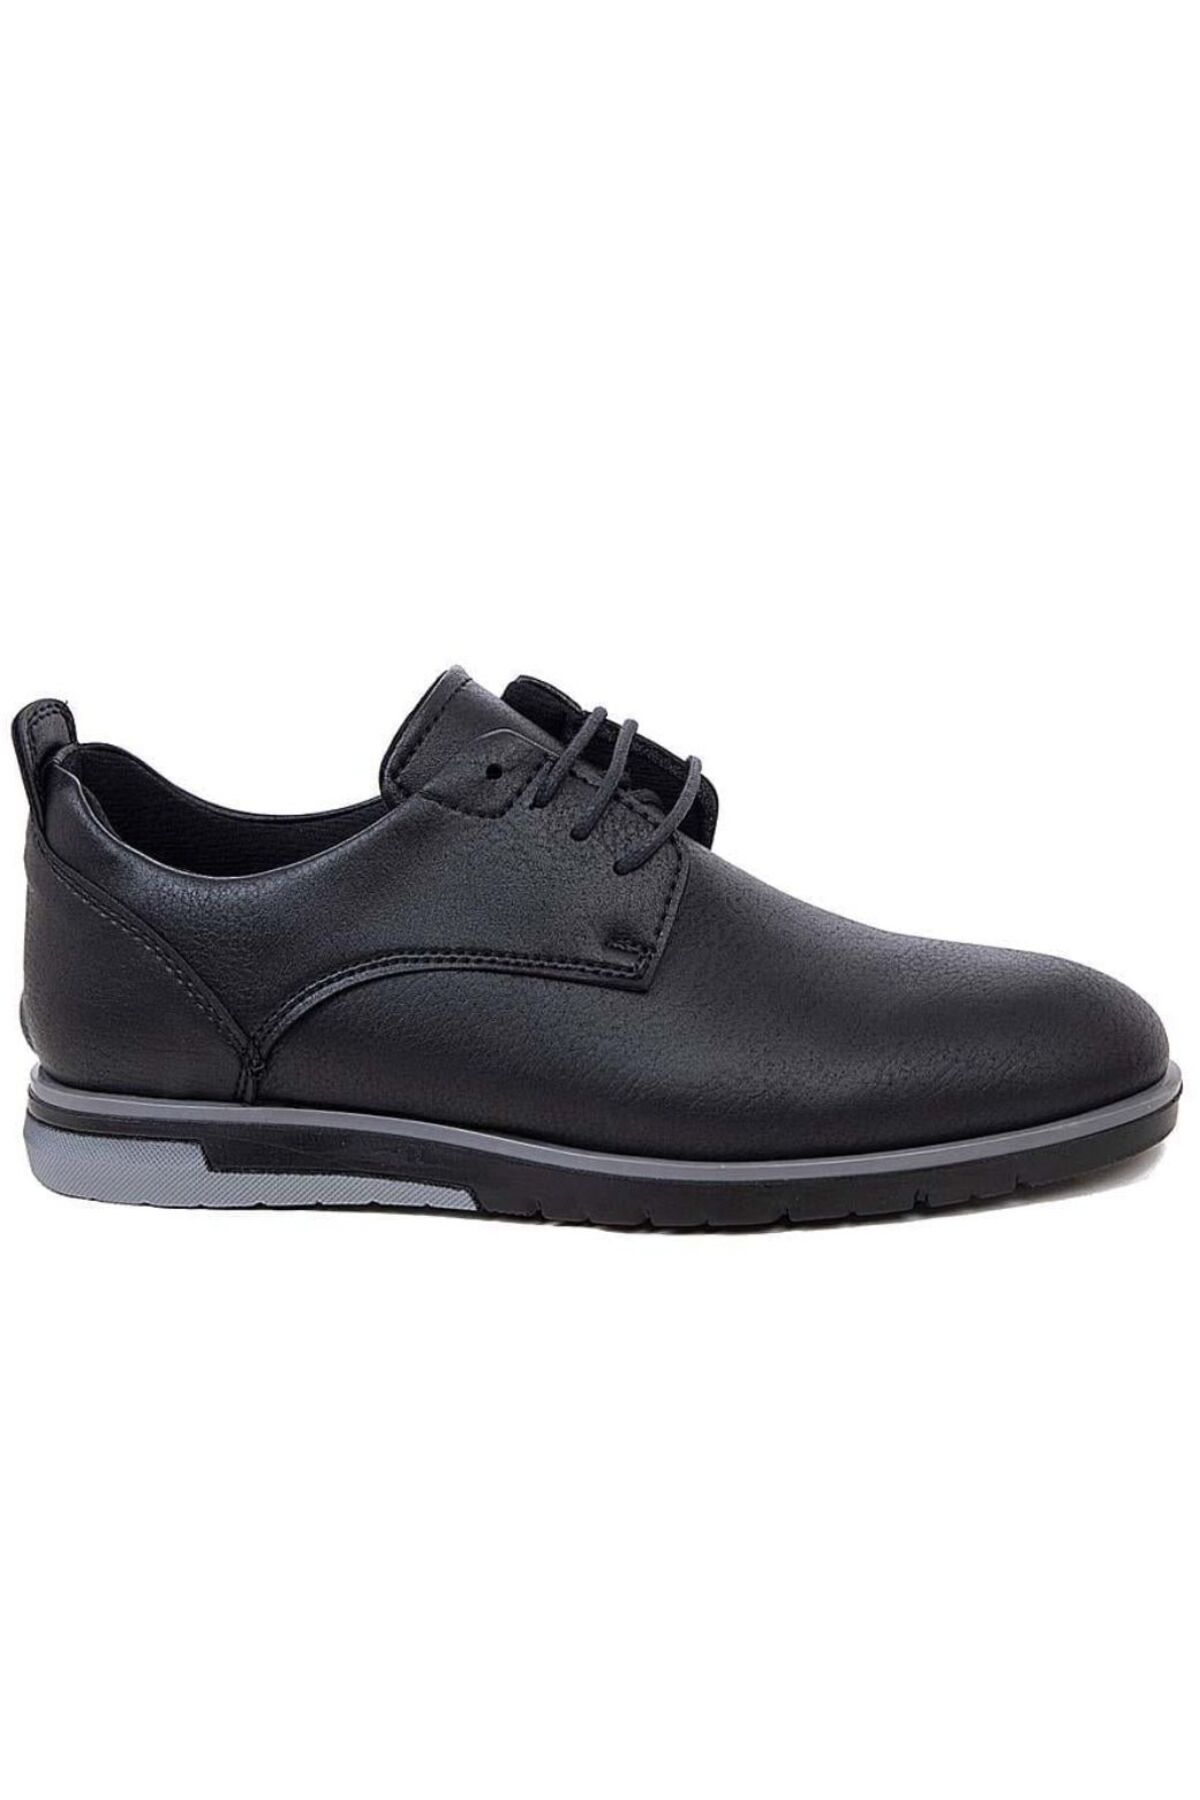 Conteyner 65402 Siyah Ortopedik Hafif Rahat Günlük Erkek Klasik Ayakkabı